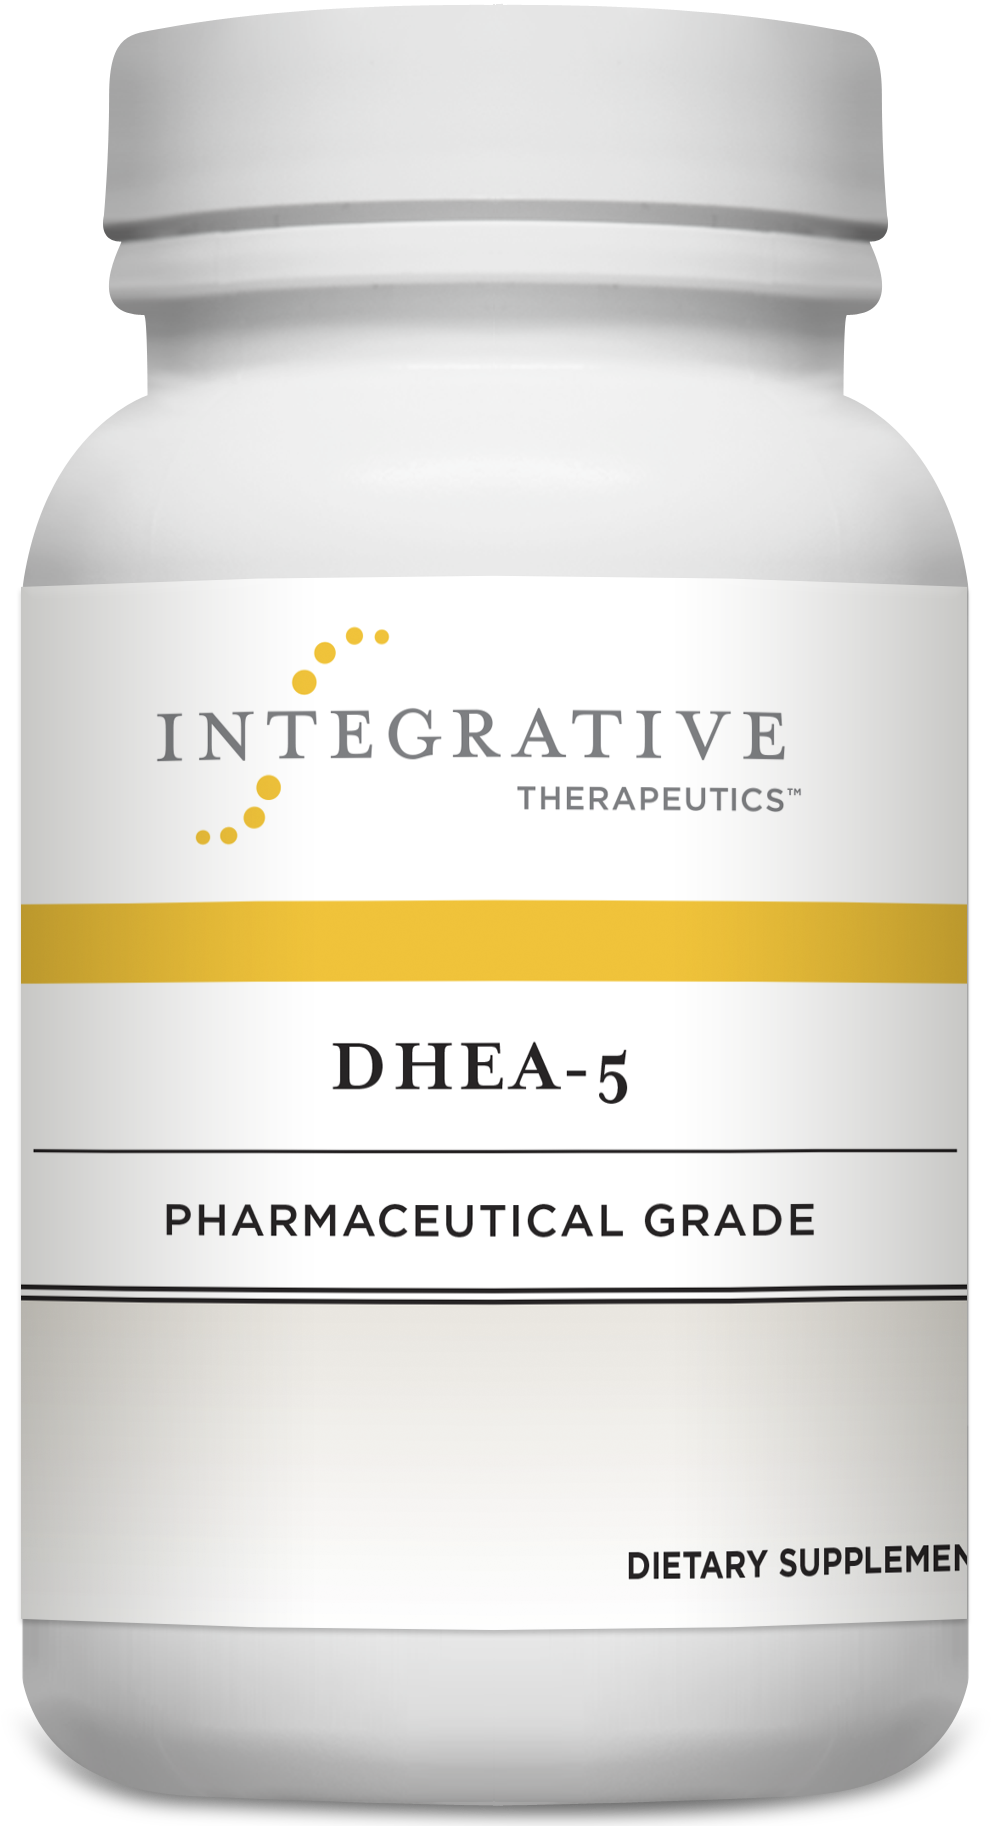 DHEA-5